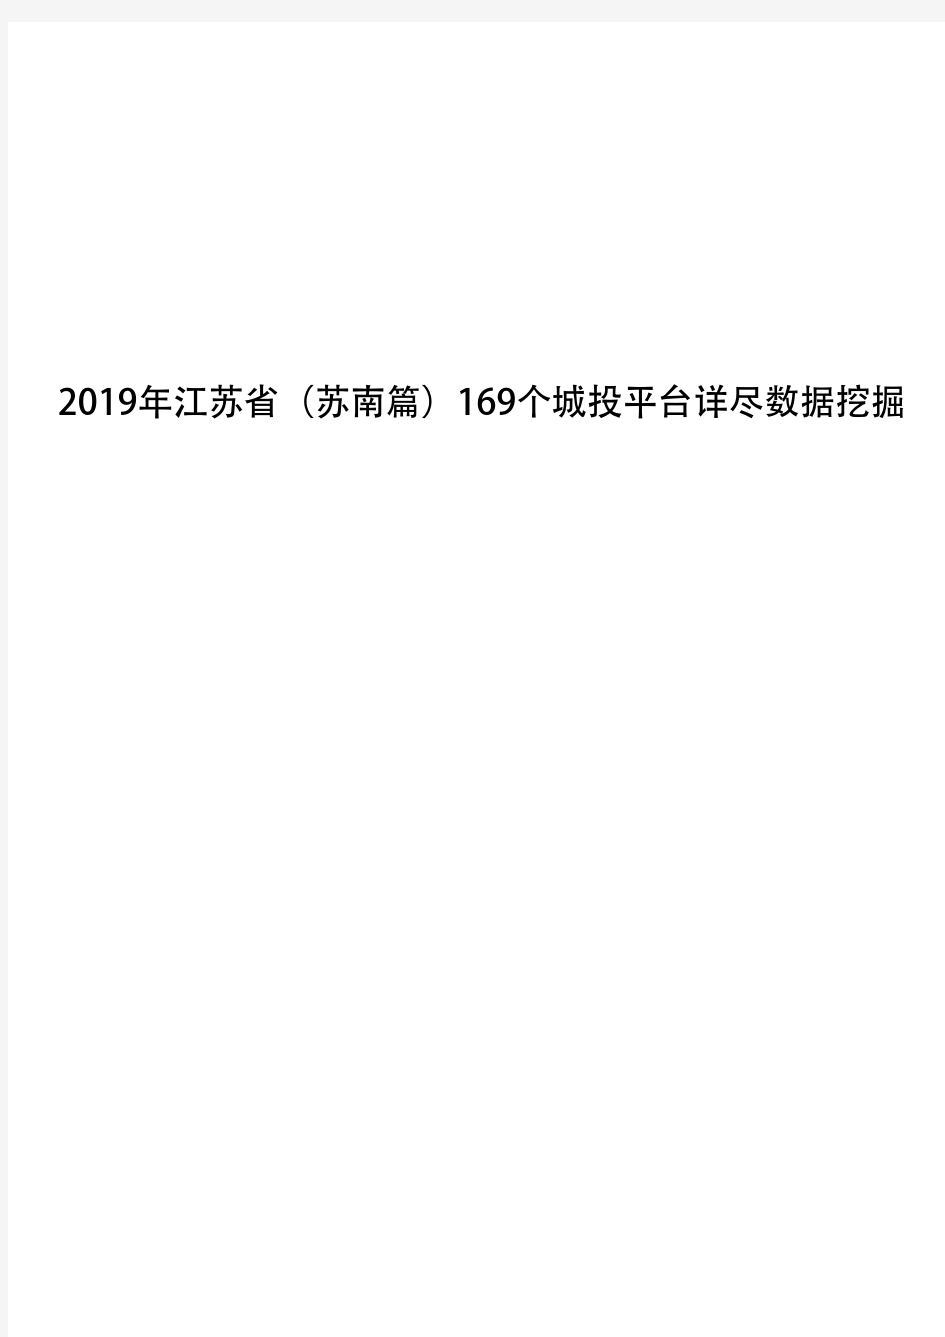 2019年江苏省(苏南篇)169个城投平台详尽数据挖掘